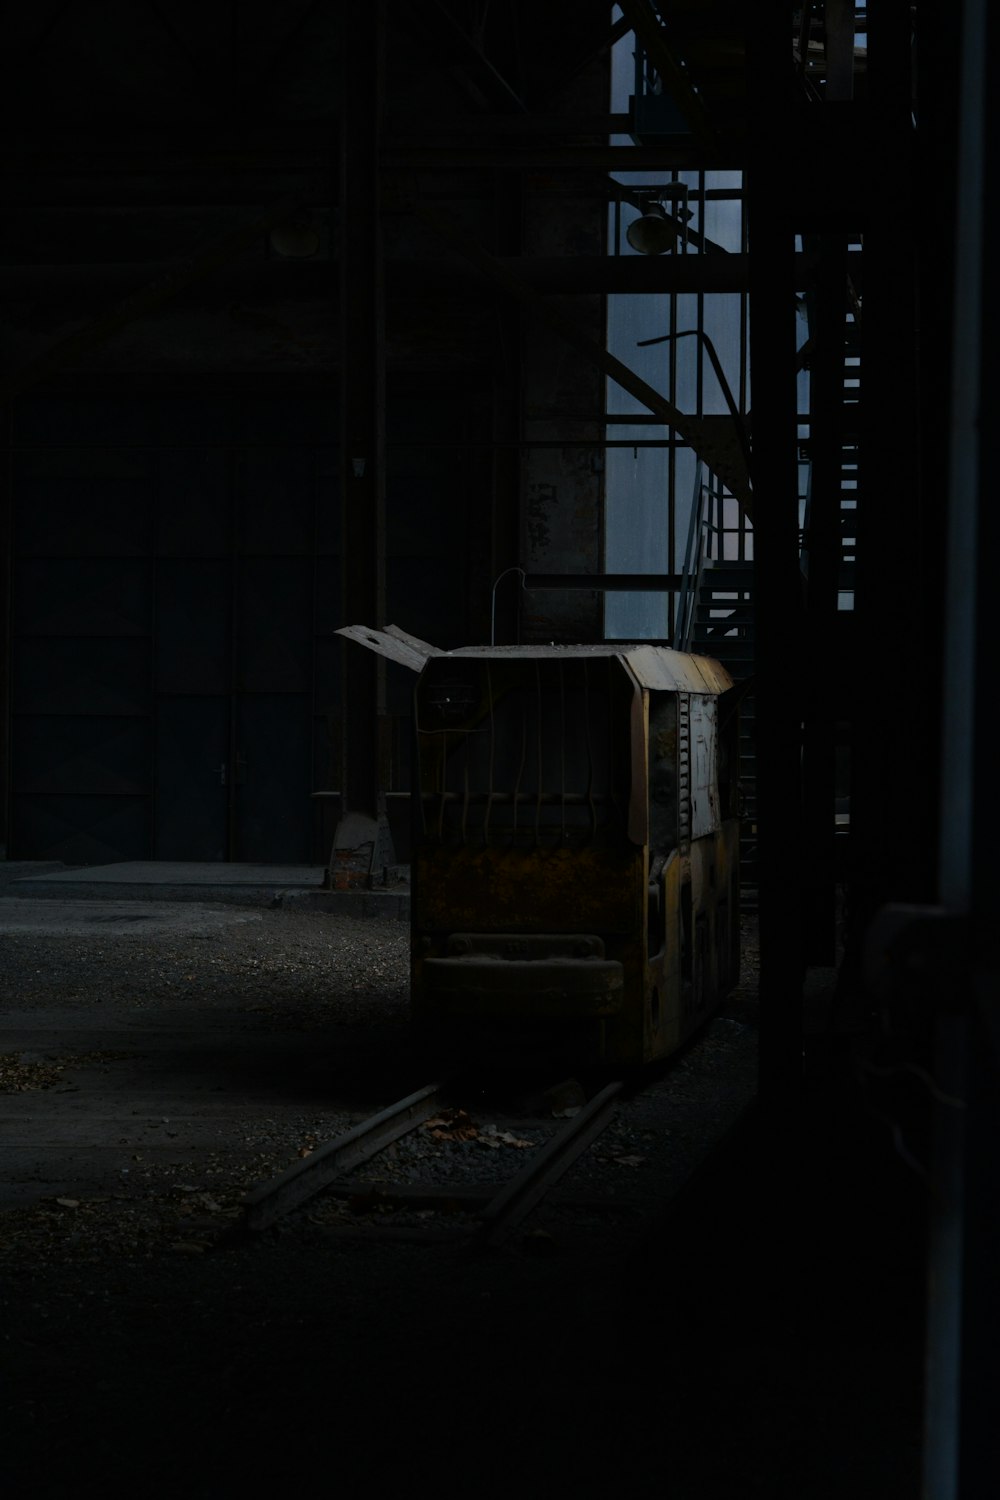 Un vieux wagon de train dans une pièce sombre